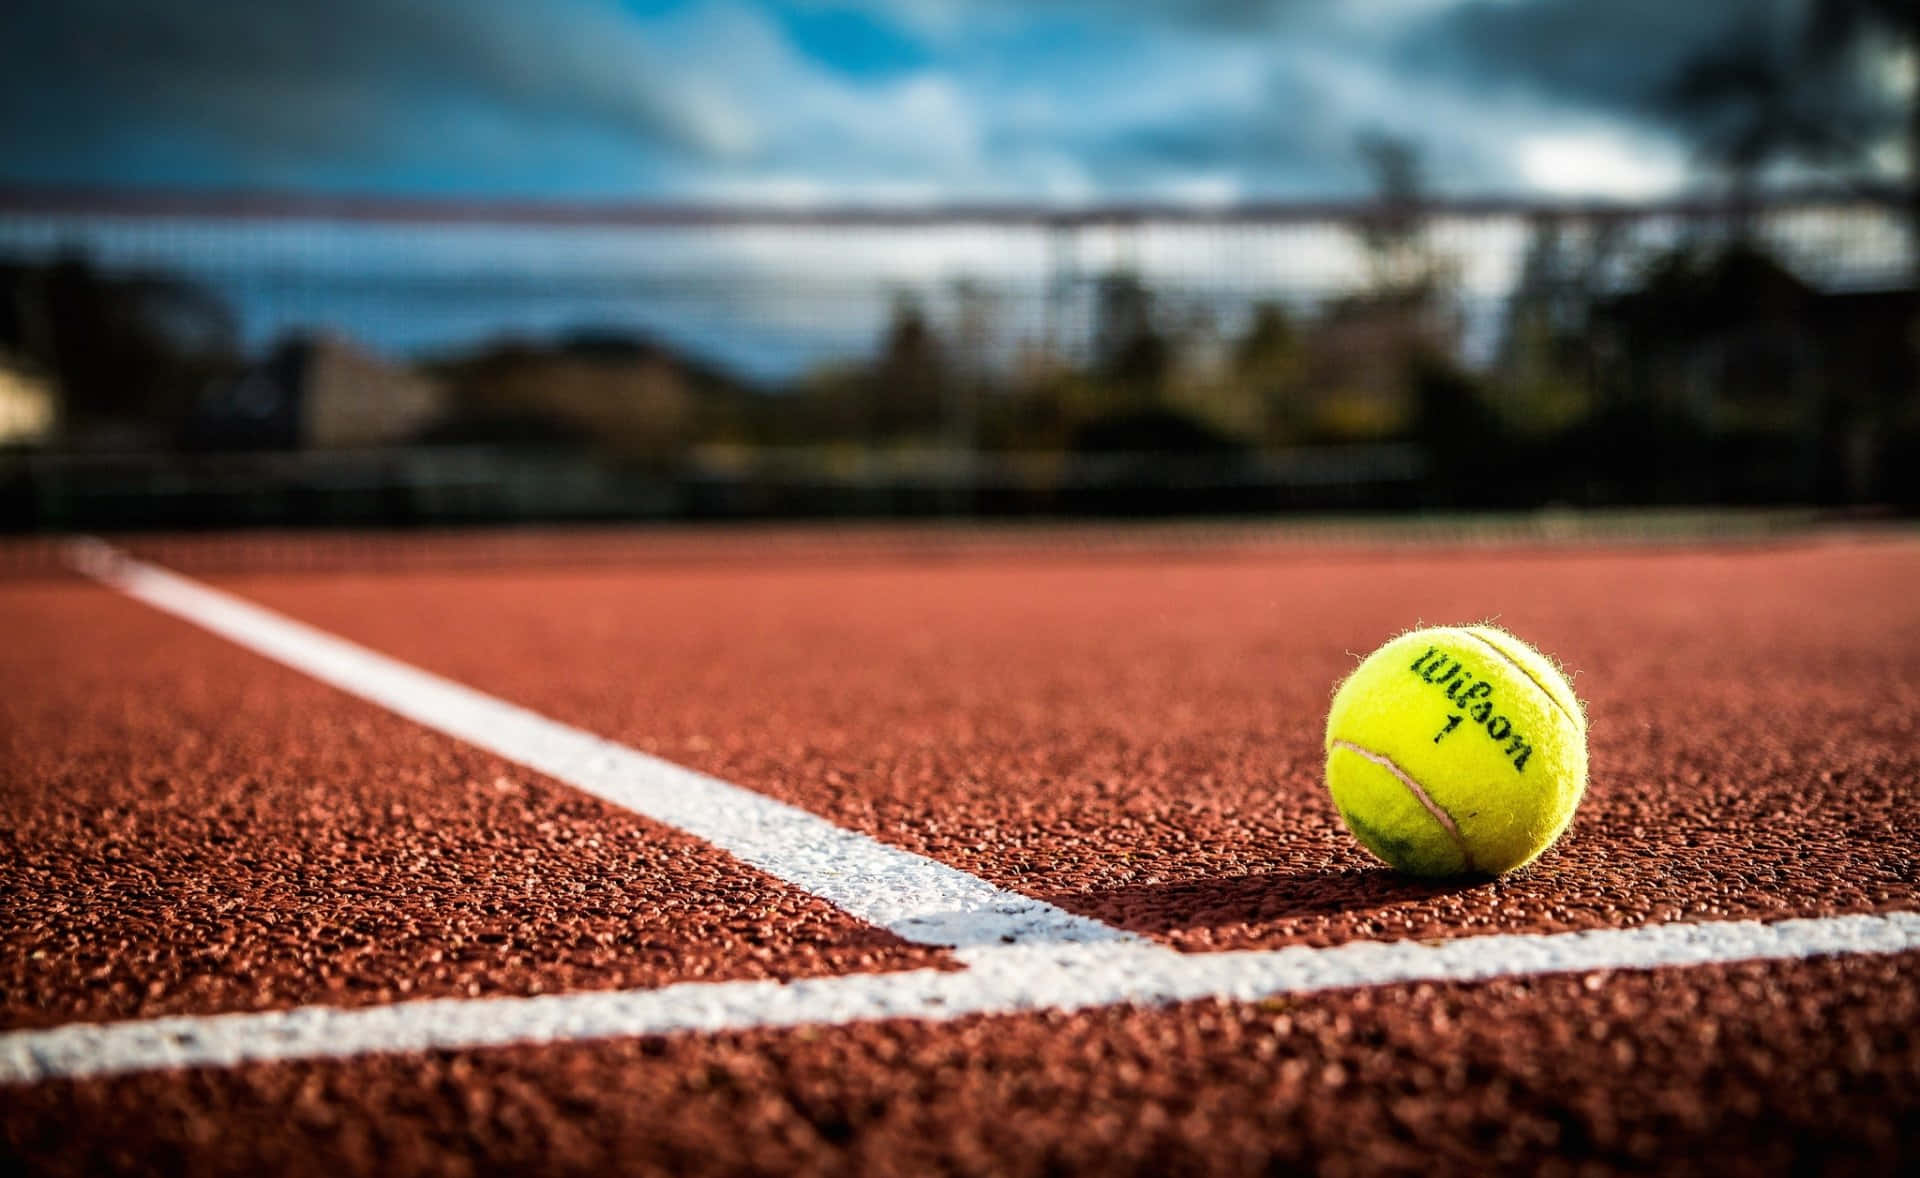 Perfekt skabt tennisbold for at forbedre din sportsoplevelse. Wallpaper